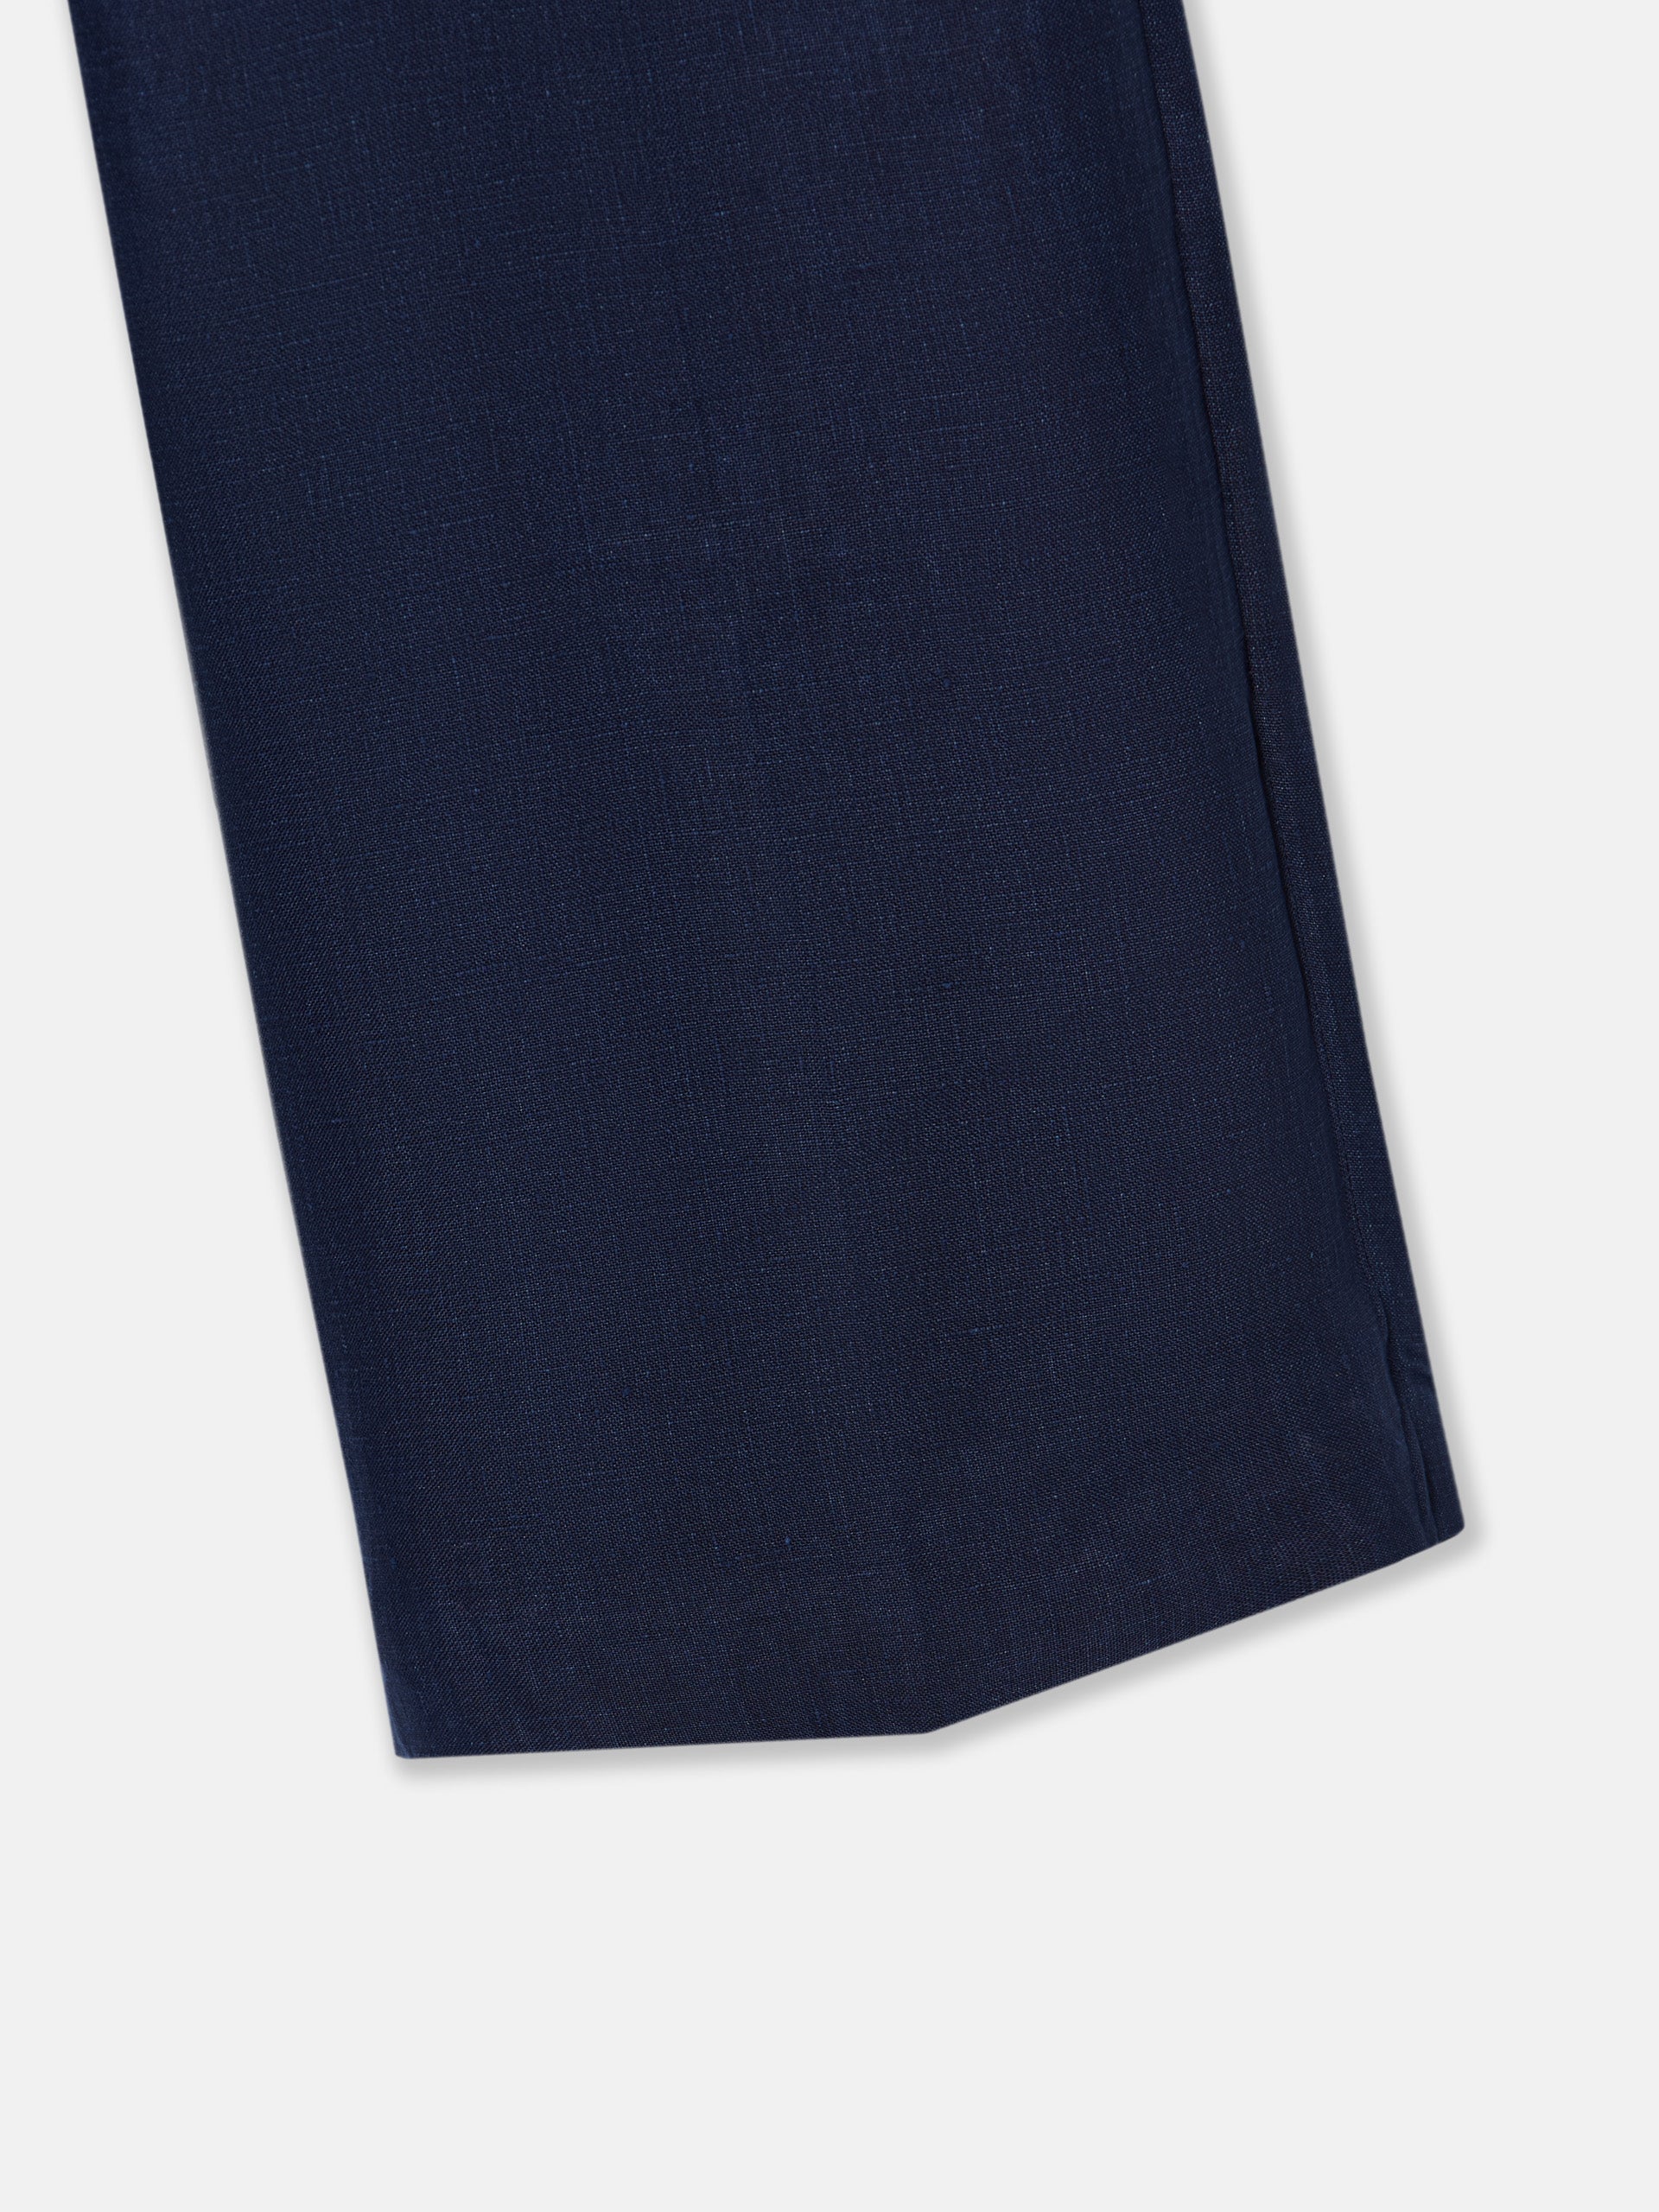 Pantalon woman vestir lino azul